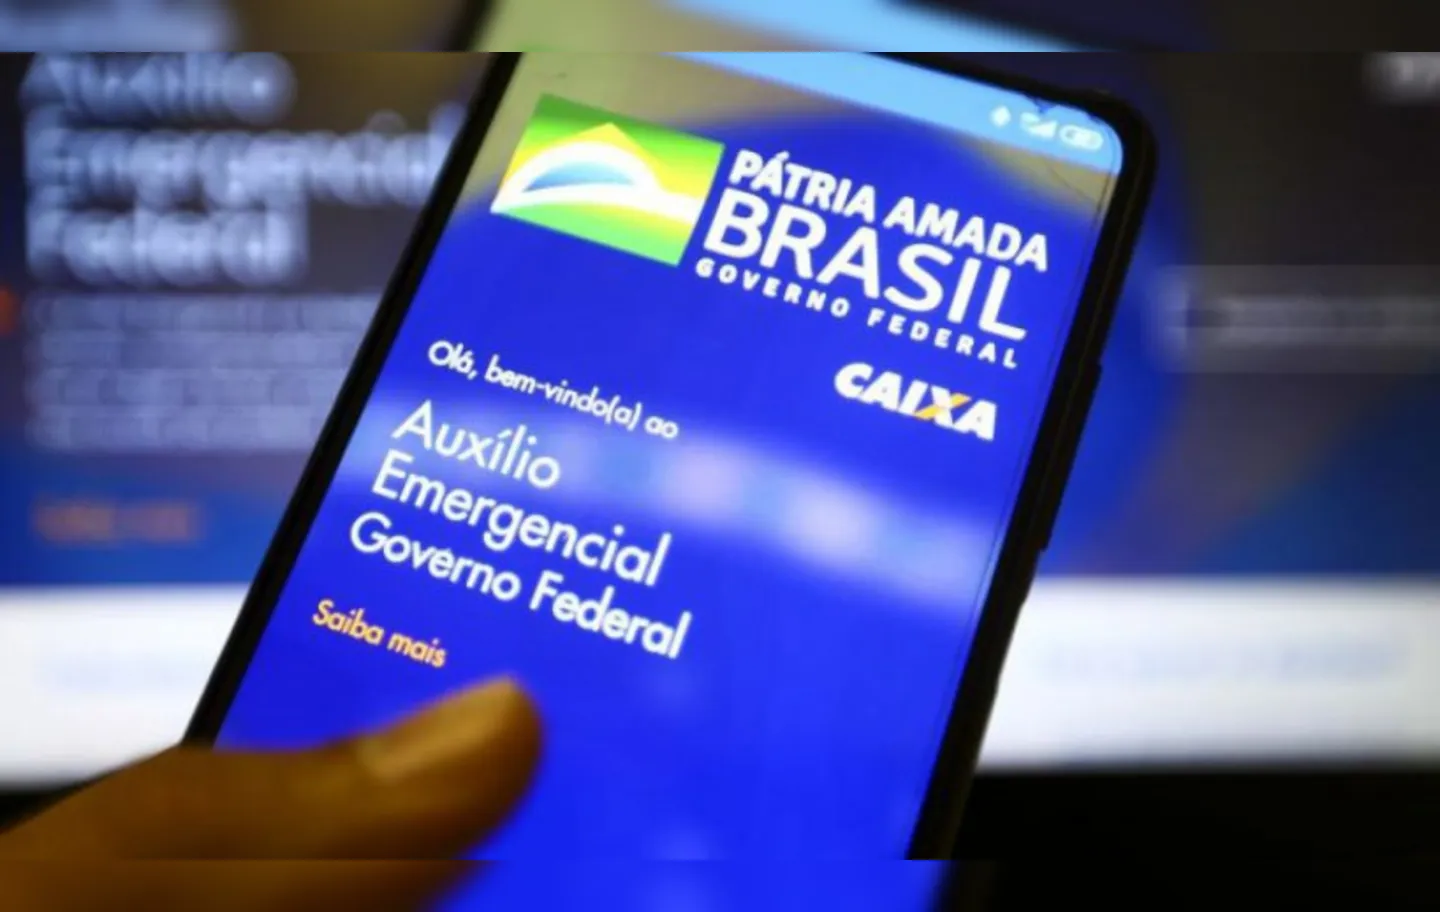 Fraudes e irregularidades também podem ser denunciadas | Foto: Marcello Casal Jr | Agência Brasil